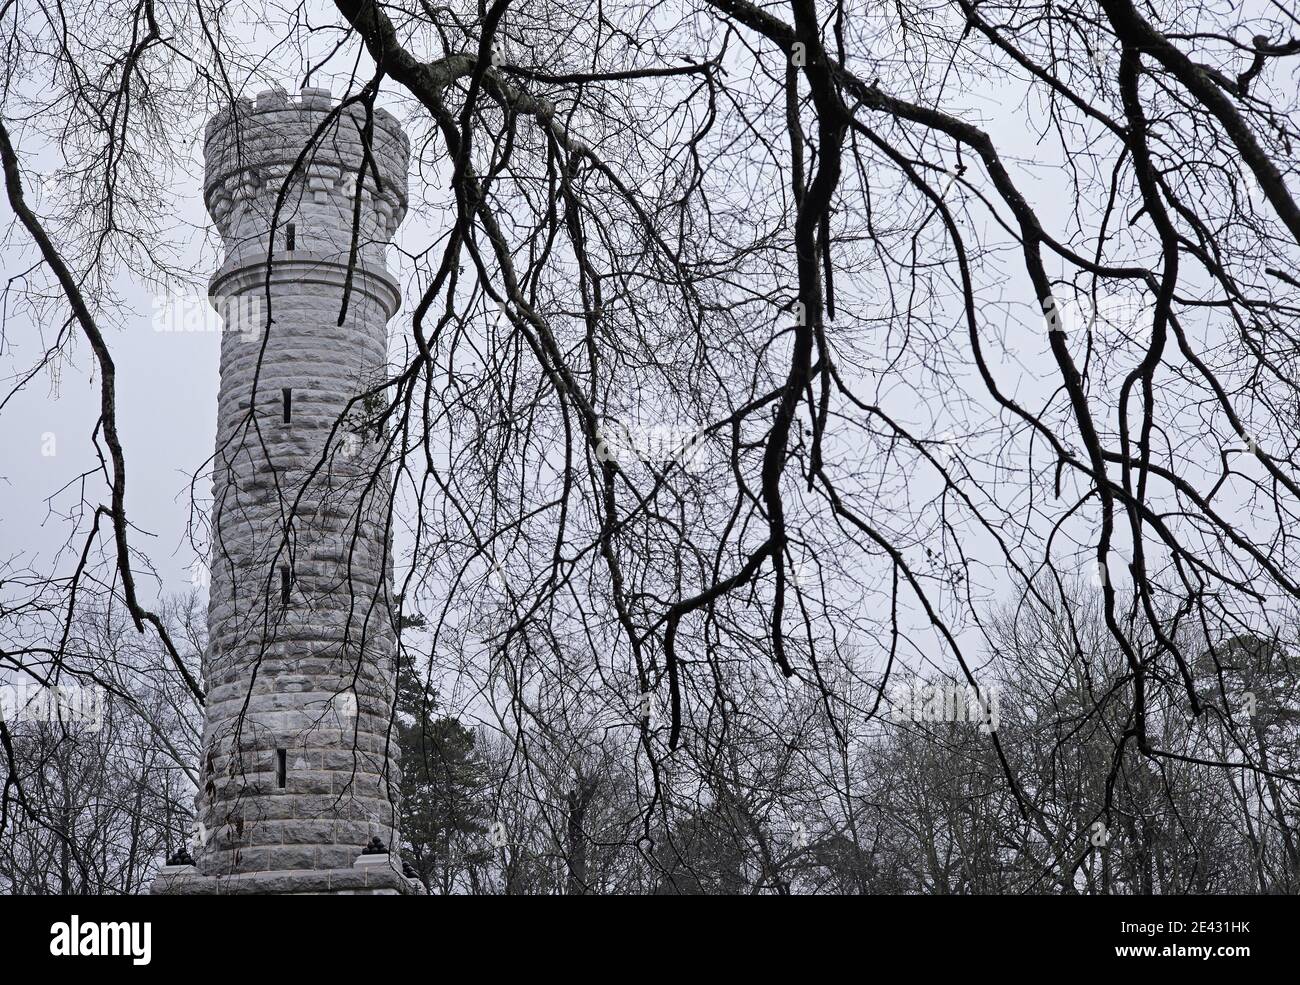 Wilder torre di 85 metri in memoria del col. John T. Wilder e dei suoi uomini, soprannominati la Brigata fulminea durante la battaglia di Chickamauga 1863 Foto Stock